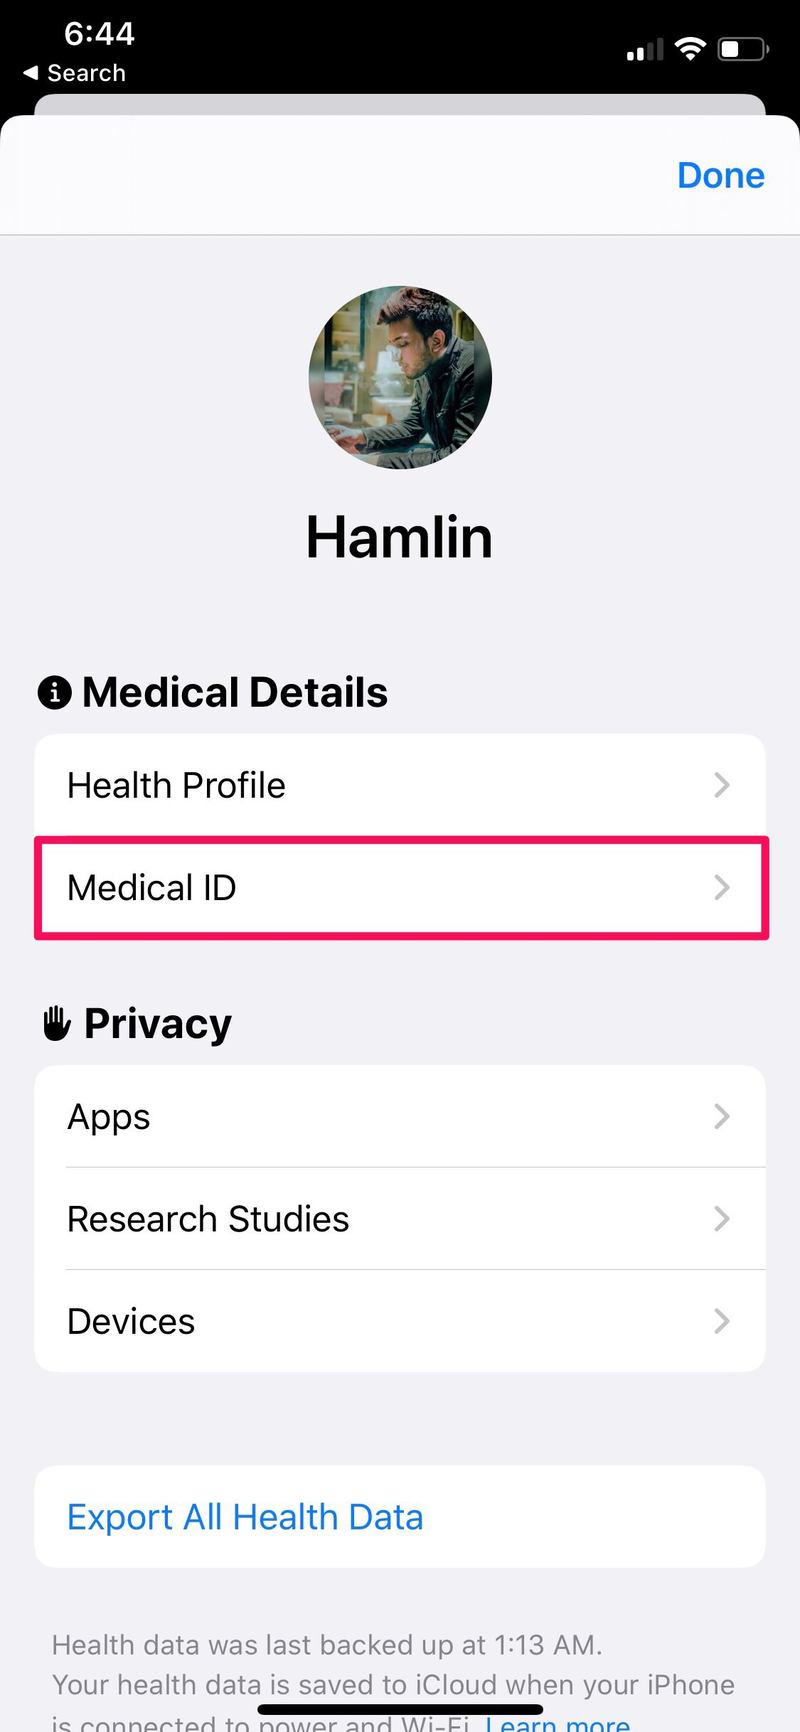 如何在 iPhone 自动拨打紧急电话时共享医疗 ID